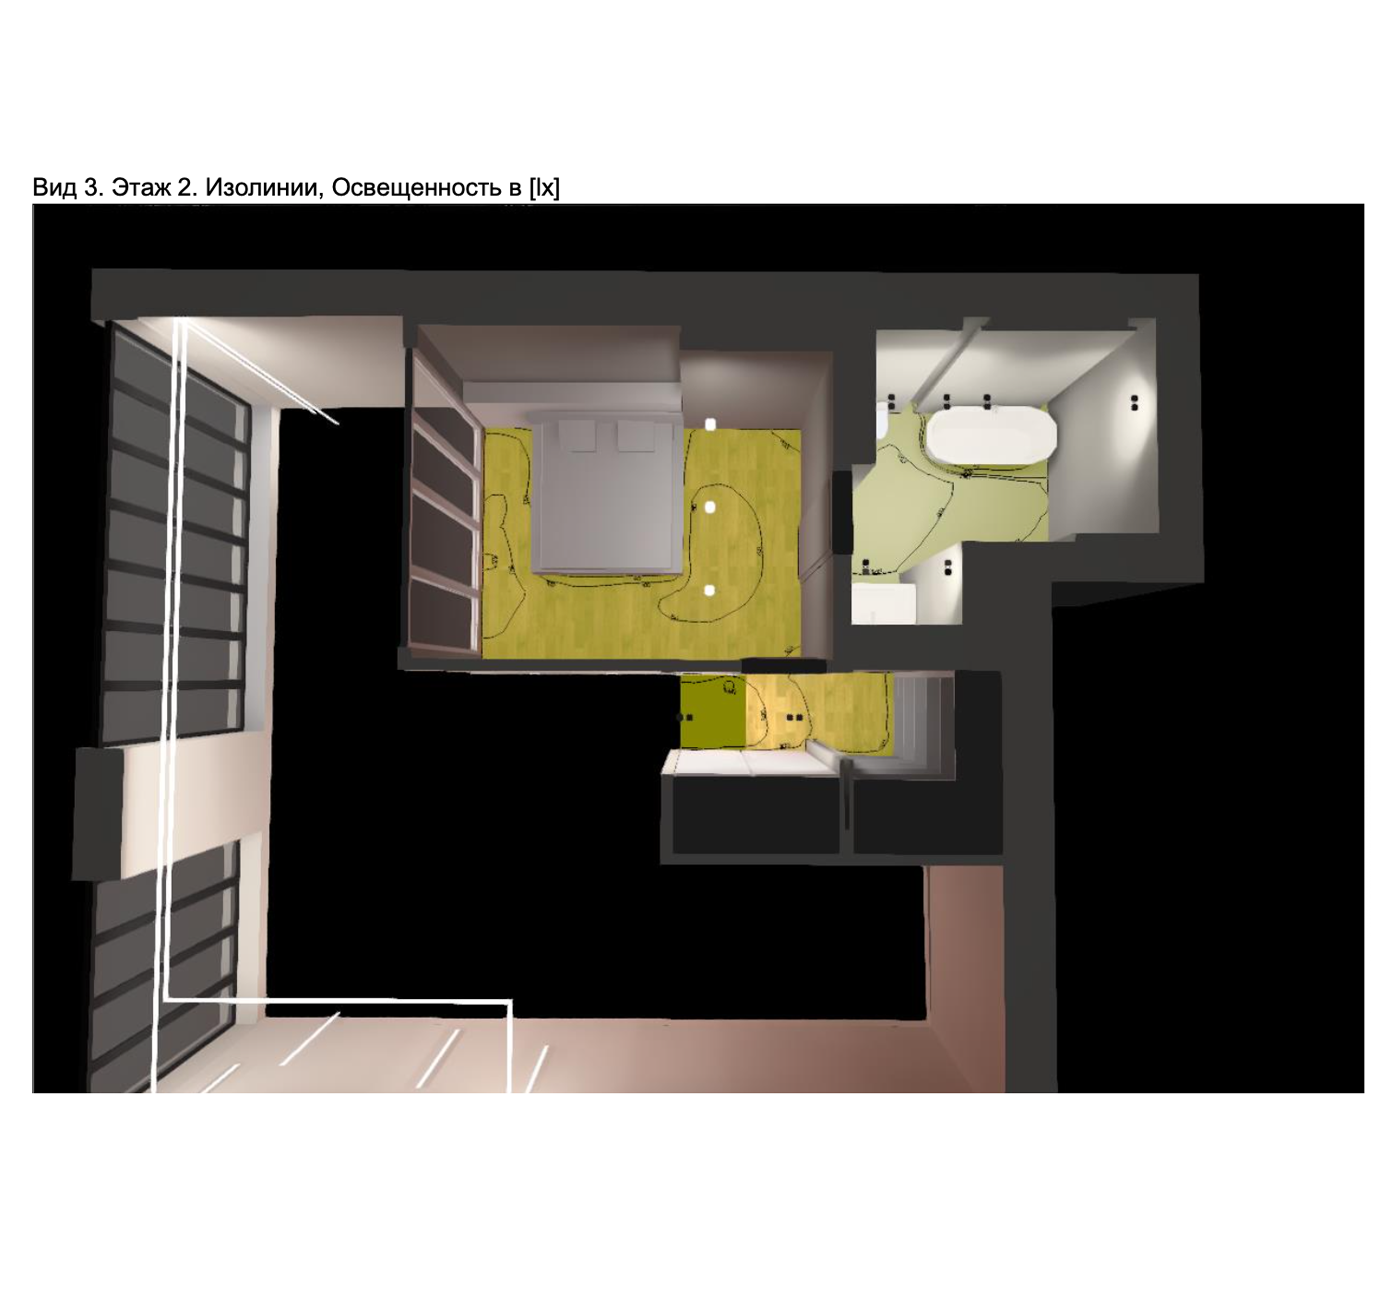 А это расчет и визуализация для первого этажа двухуровневой квартиры